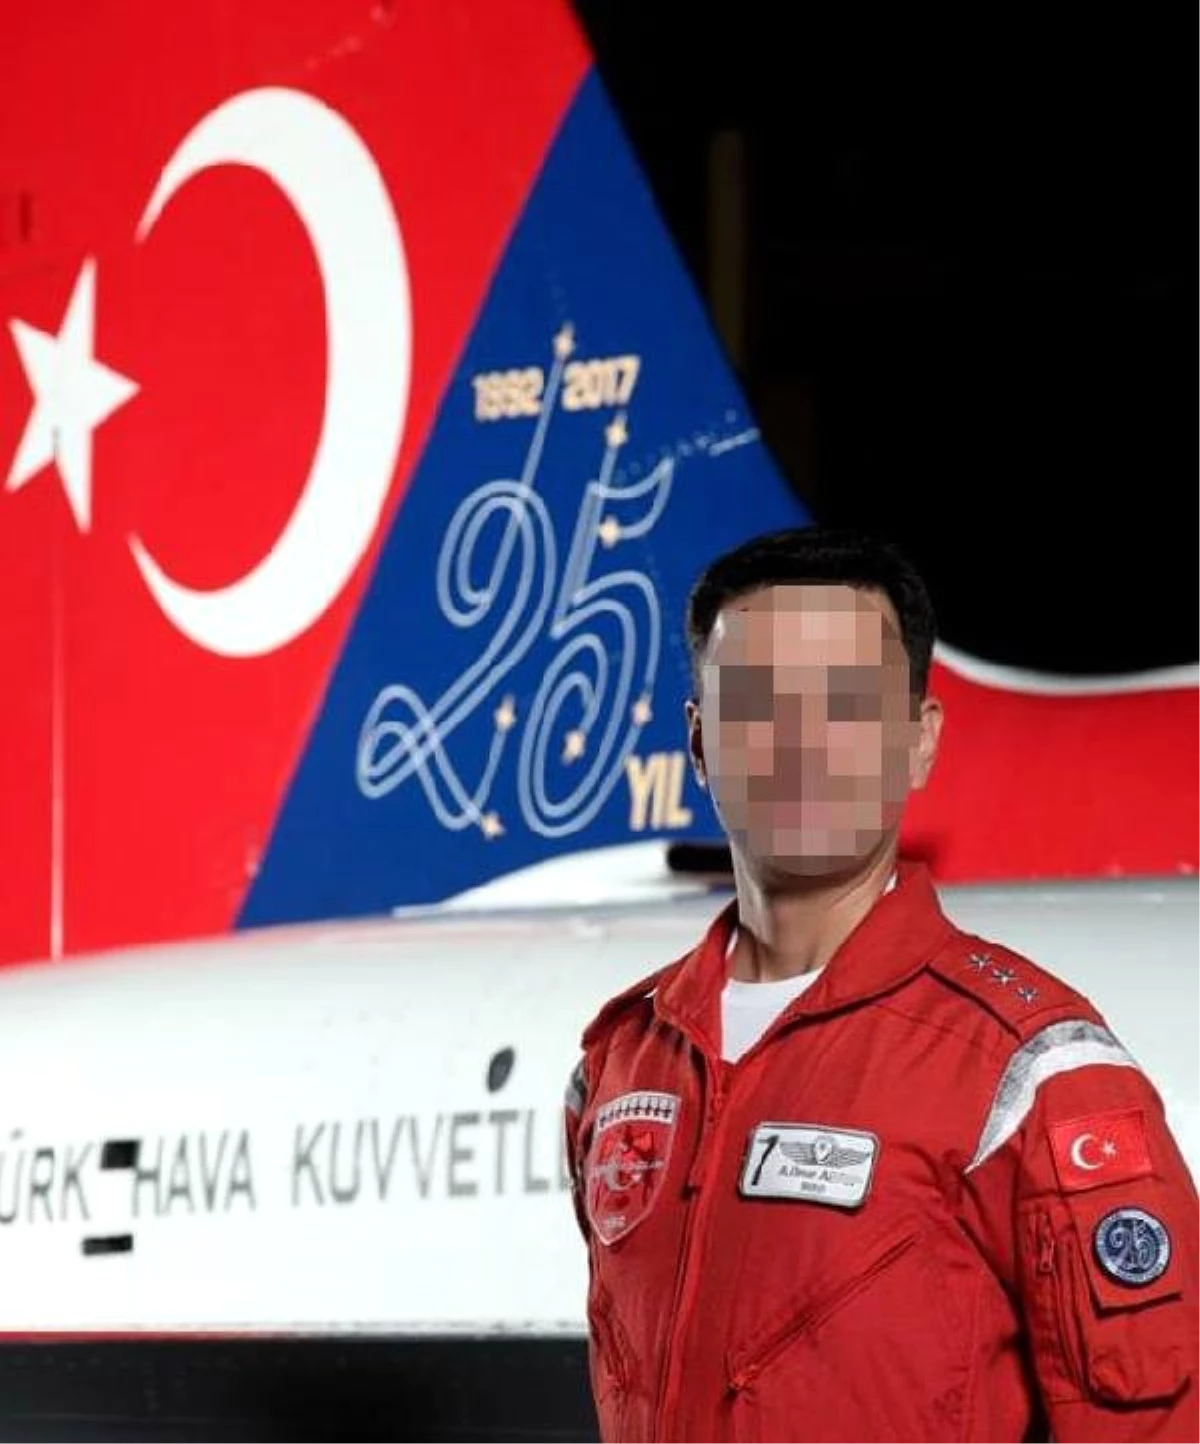 FETÖ\'dan tutuklu eski Türk Yıldızları pilotu: Numarama herkes ulaşabilir